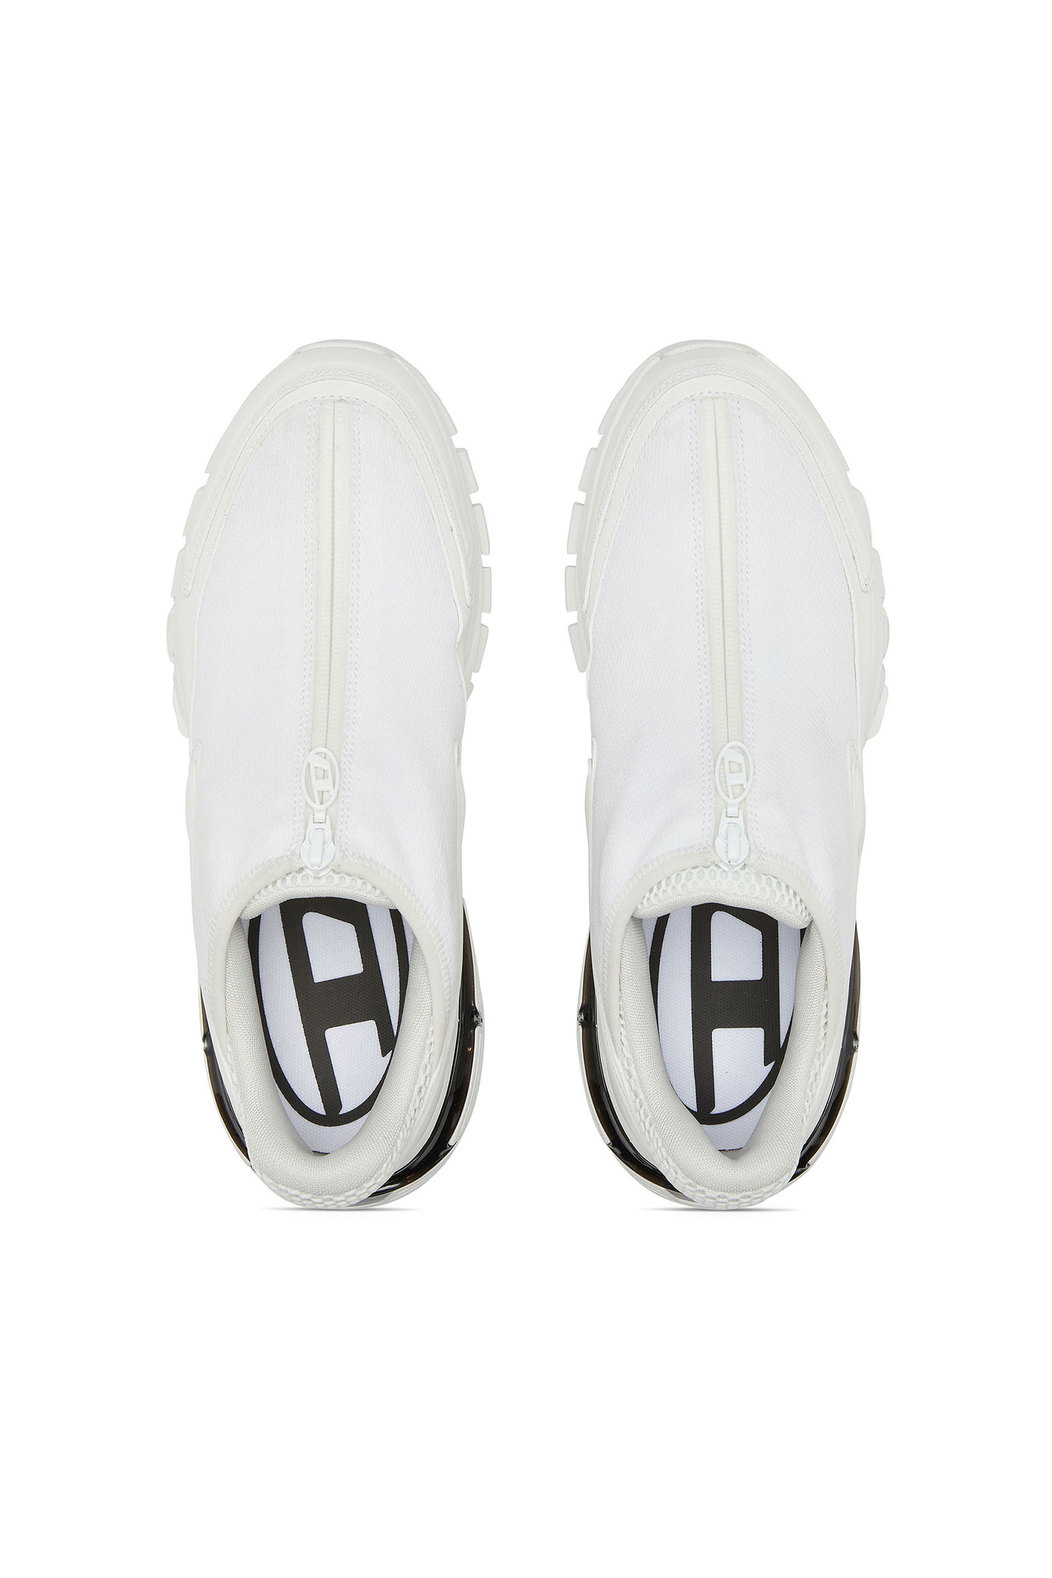 S-Serendipity Pro-X1 Zip X - Slip-on mesh sneakers with zip